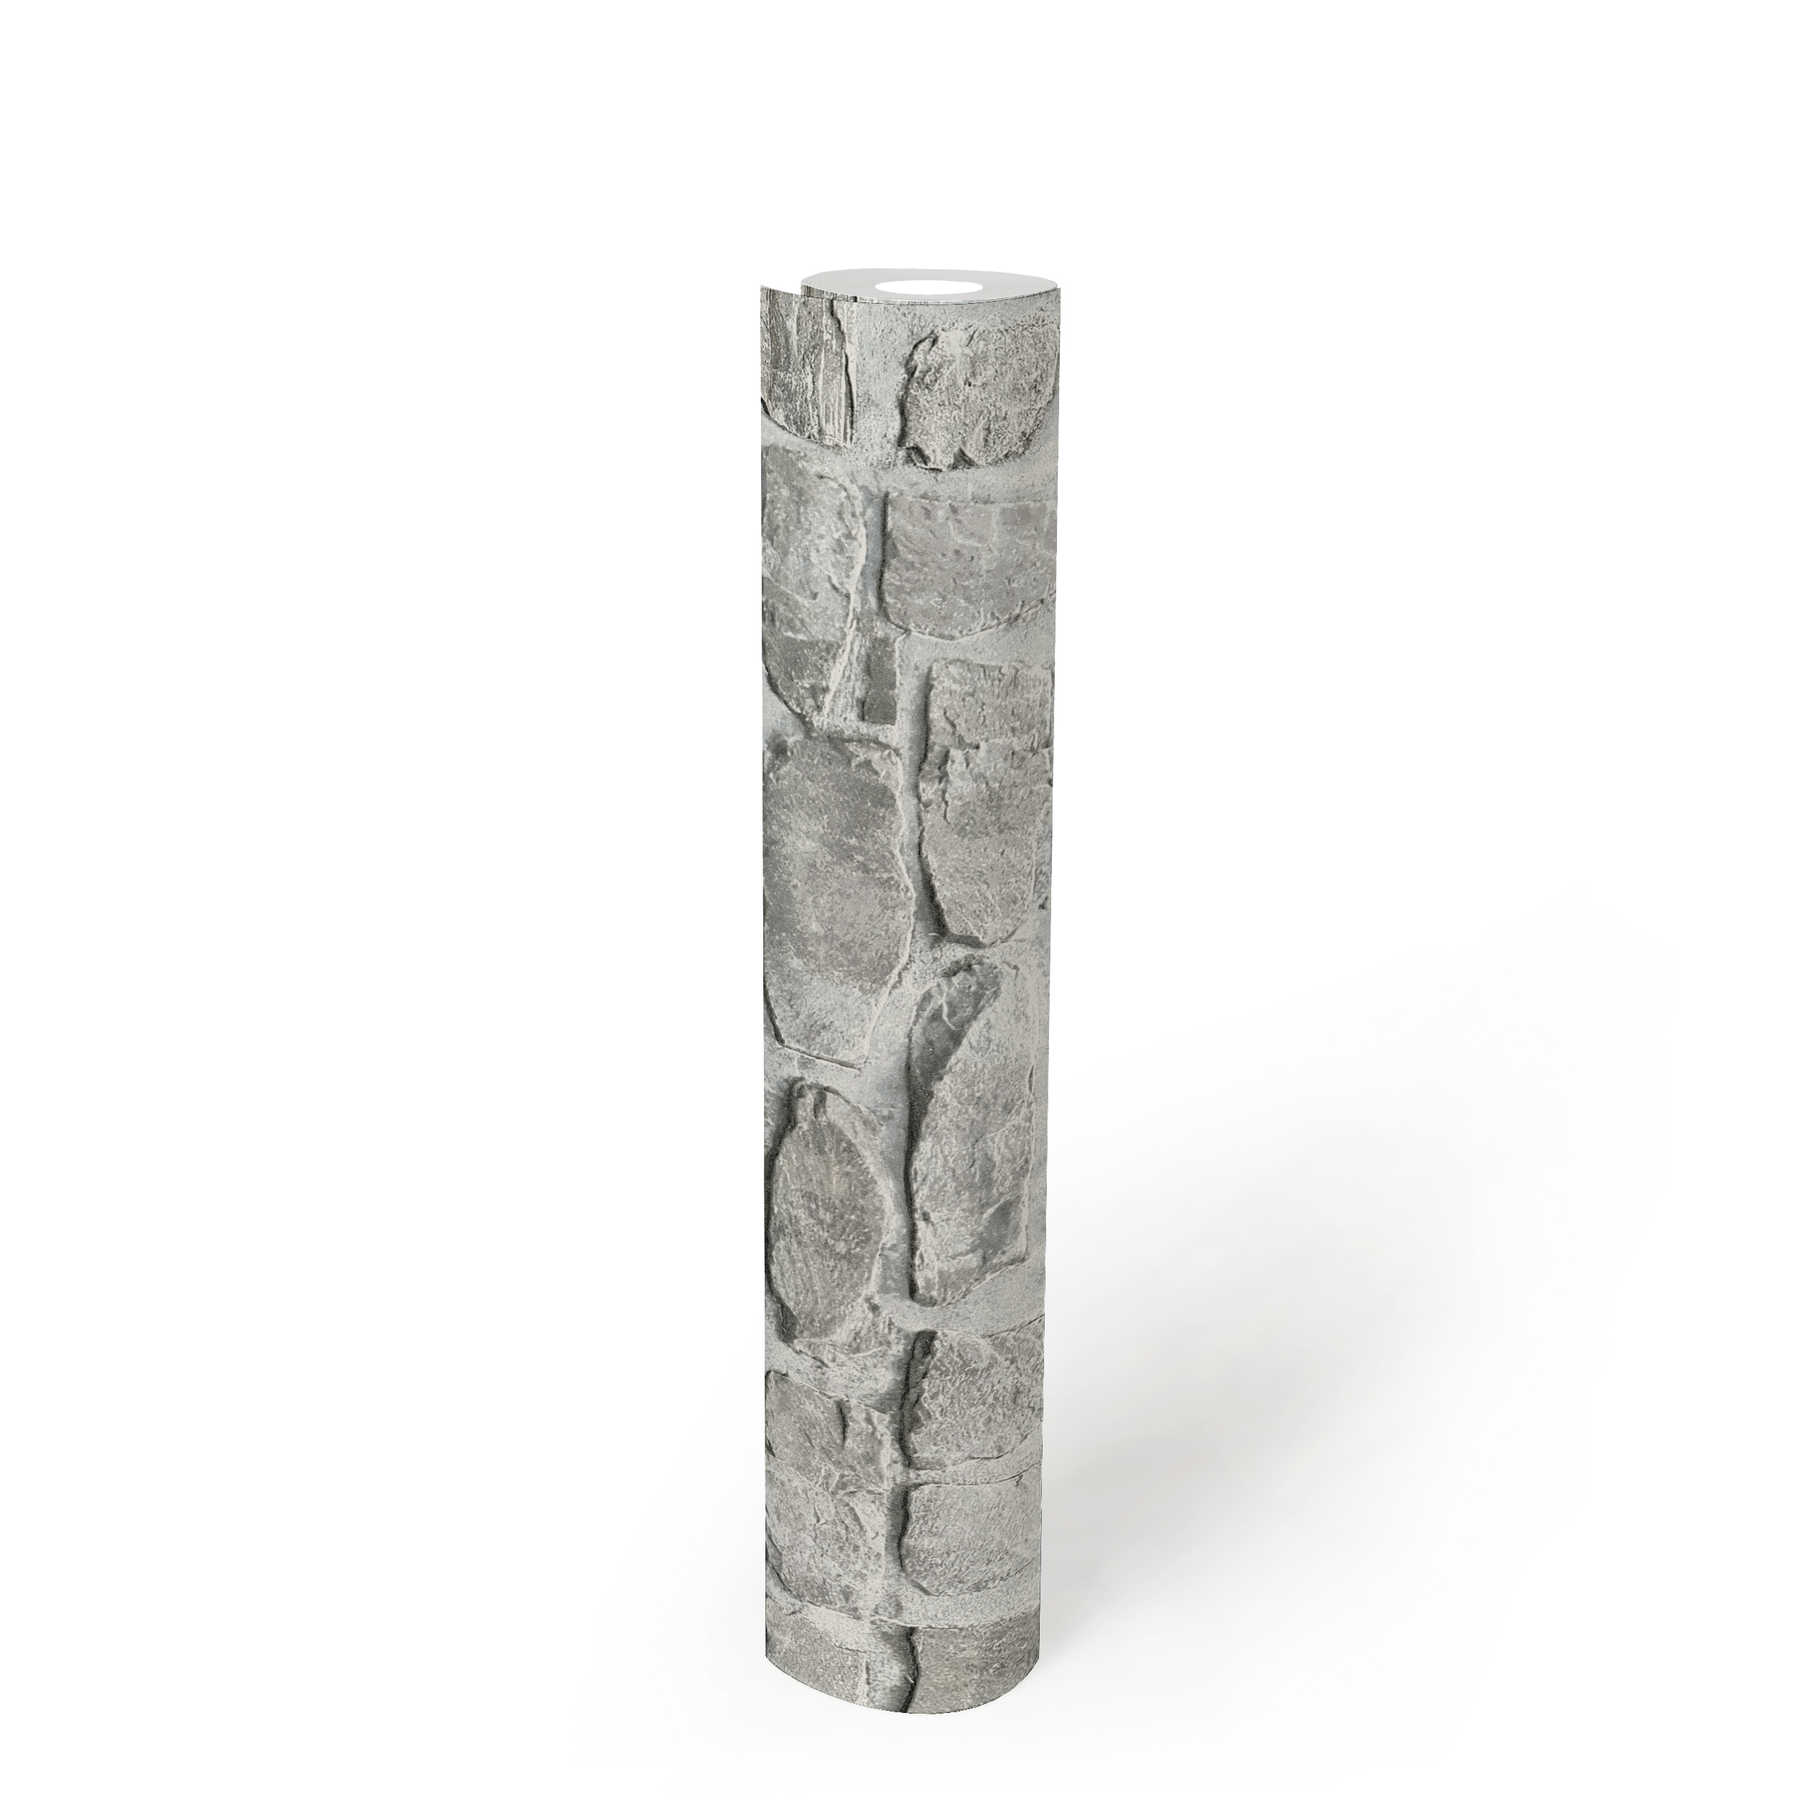             Stein Vliestapete mit Natursteinmuster – Grau, Beige
        